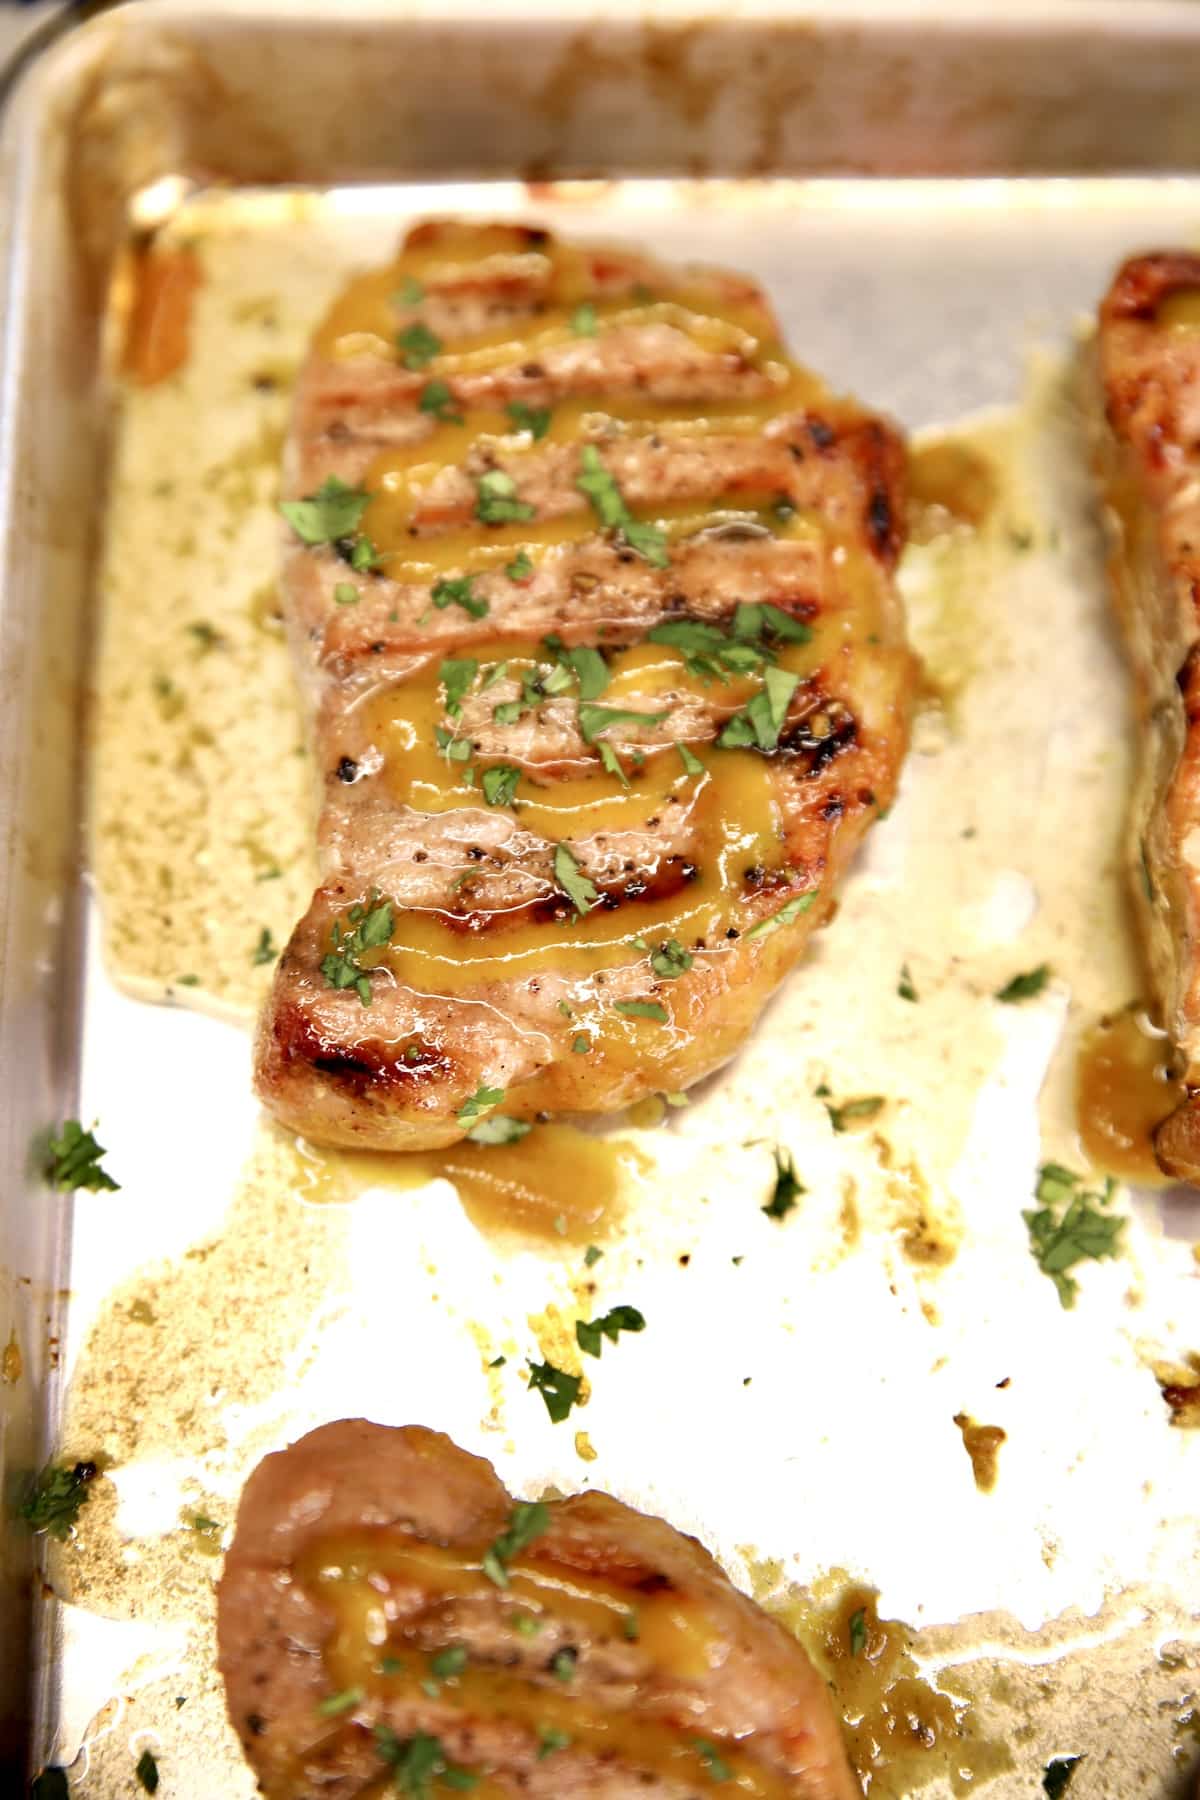 Grilled pork chop with mustard glaze.